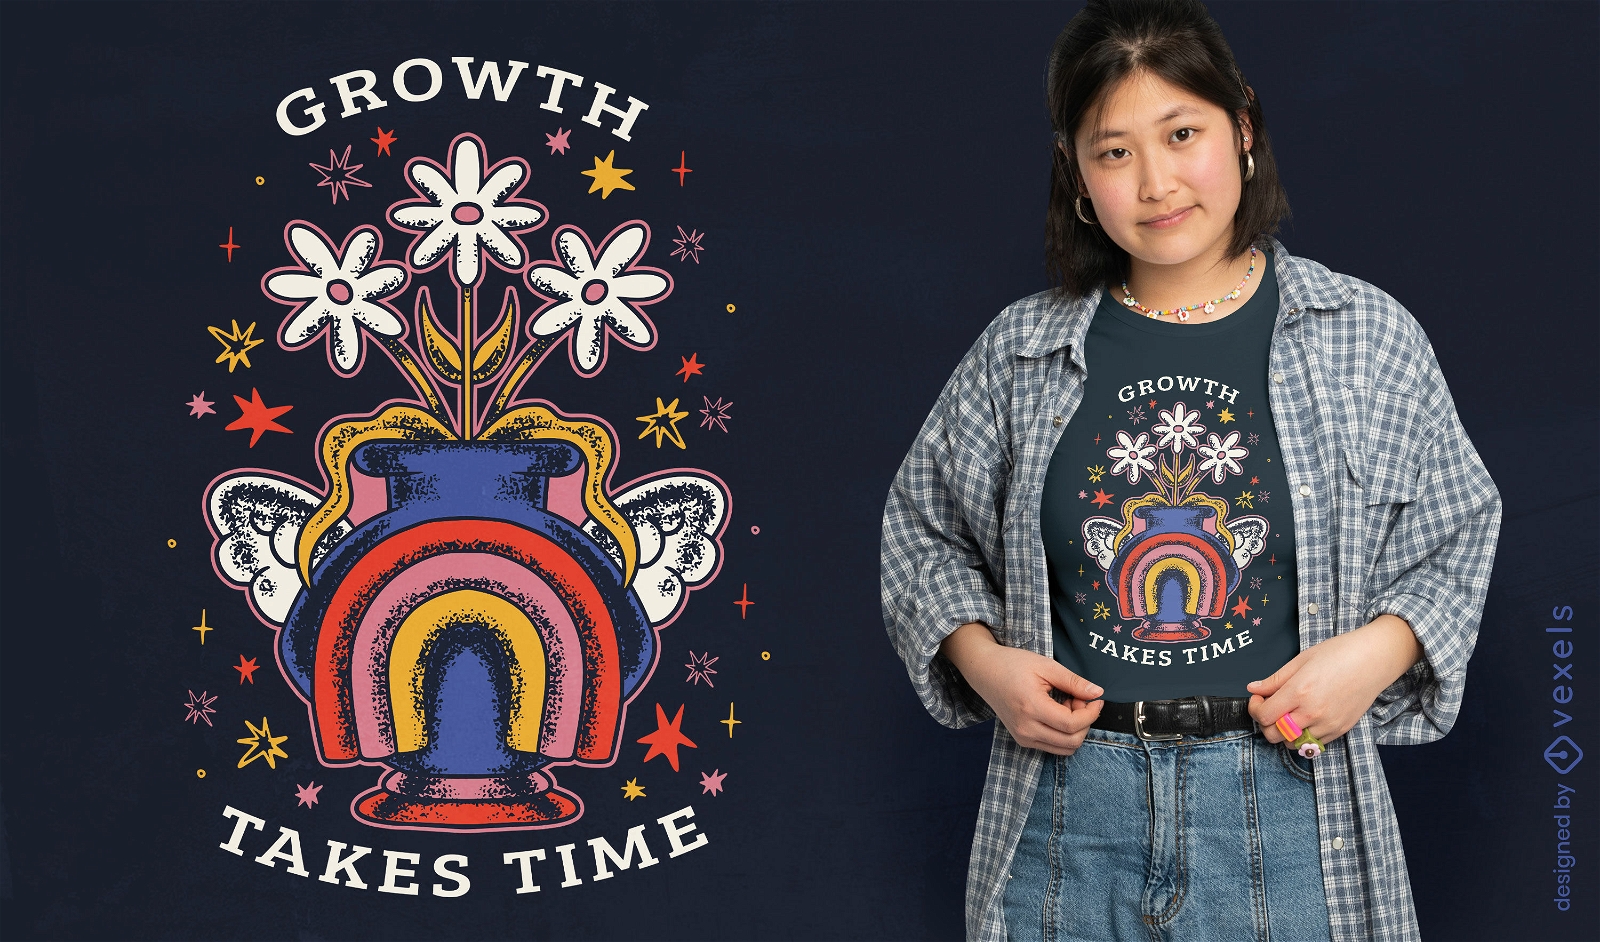 El crecimiento lleva tiempo diseño de camiseta floral.